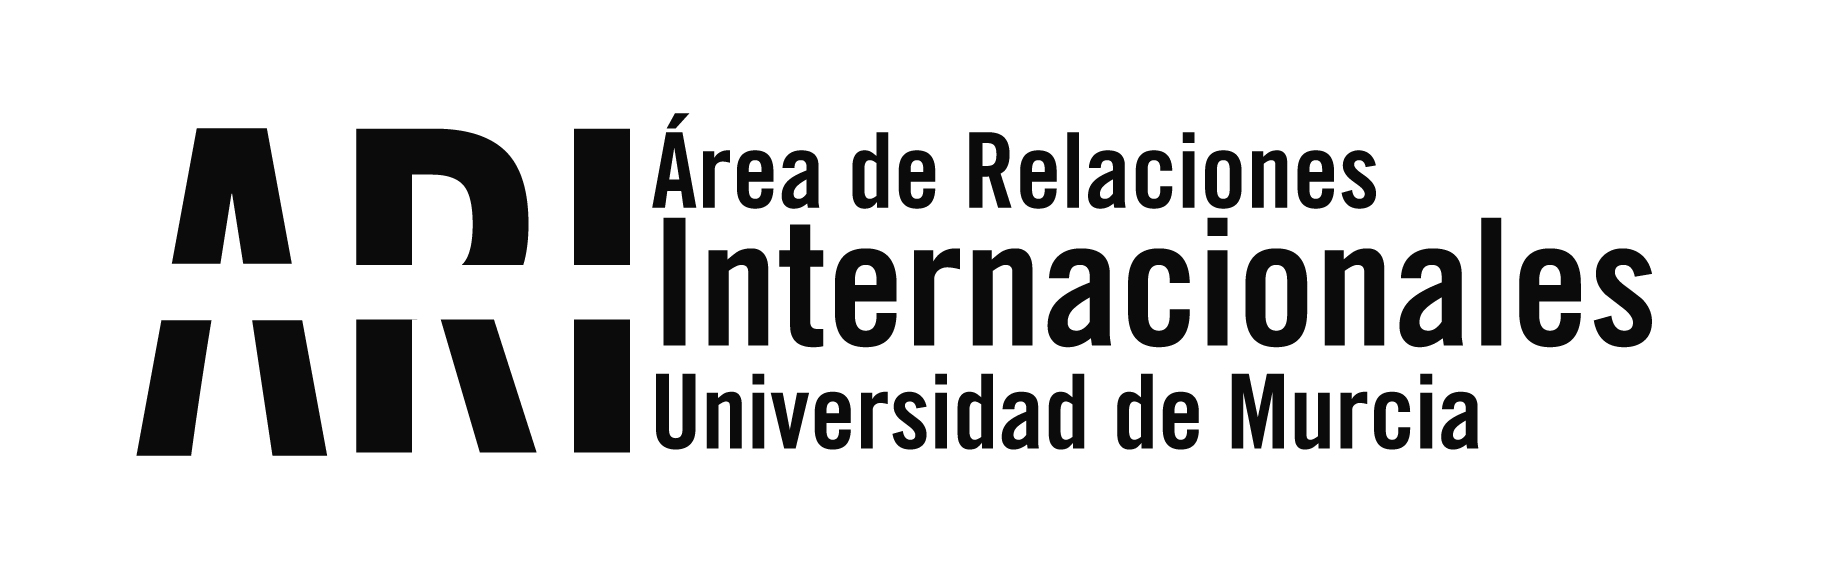 Normas establecidas en la Universidad de Murcia para la contención de la Covid-19 - Área de Relaciones Internacionales